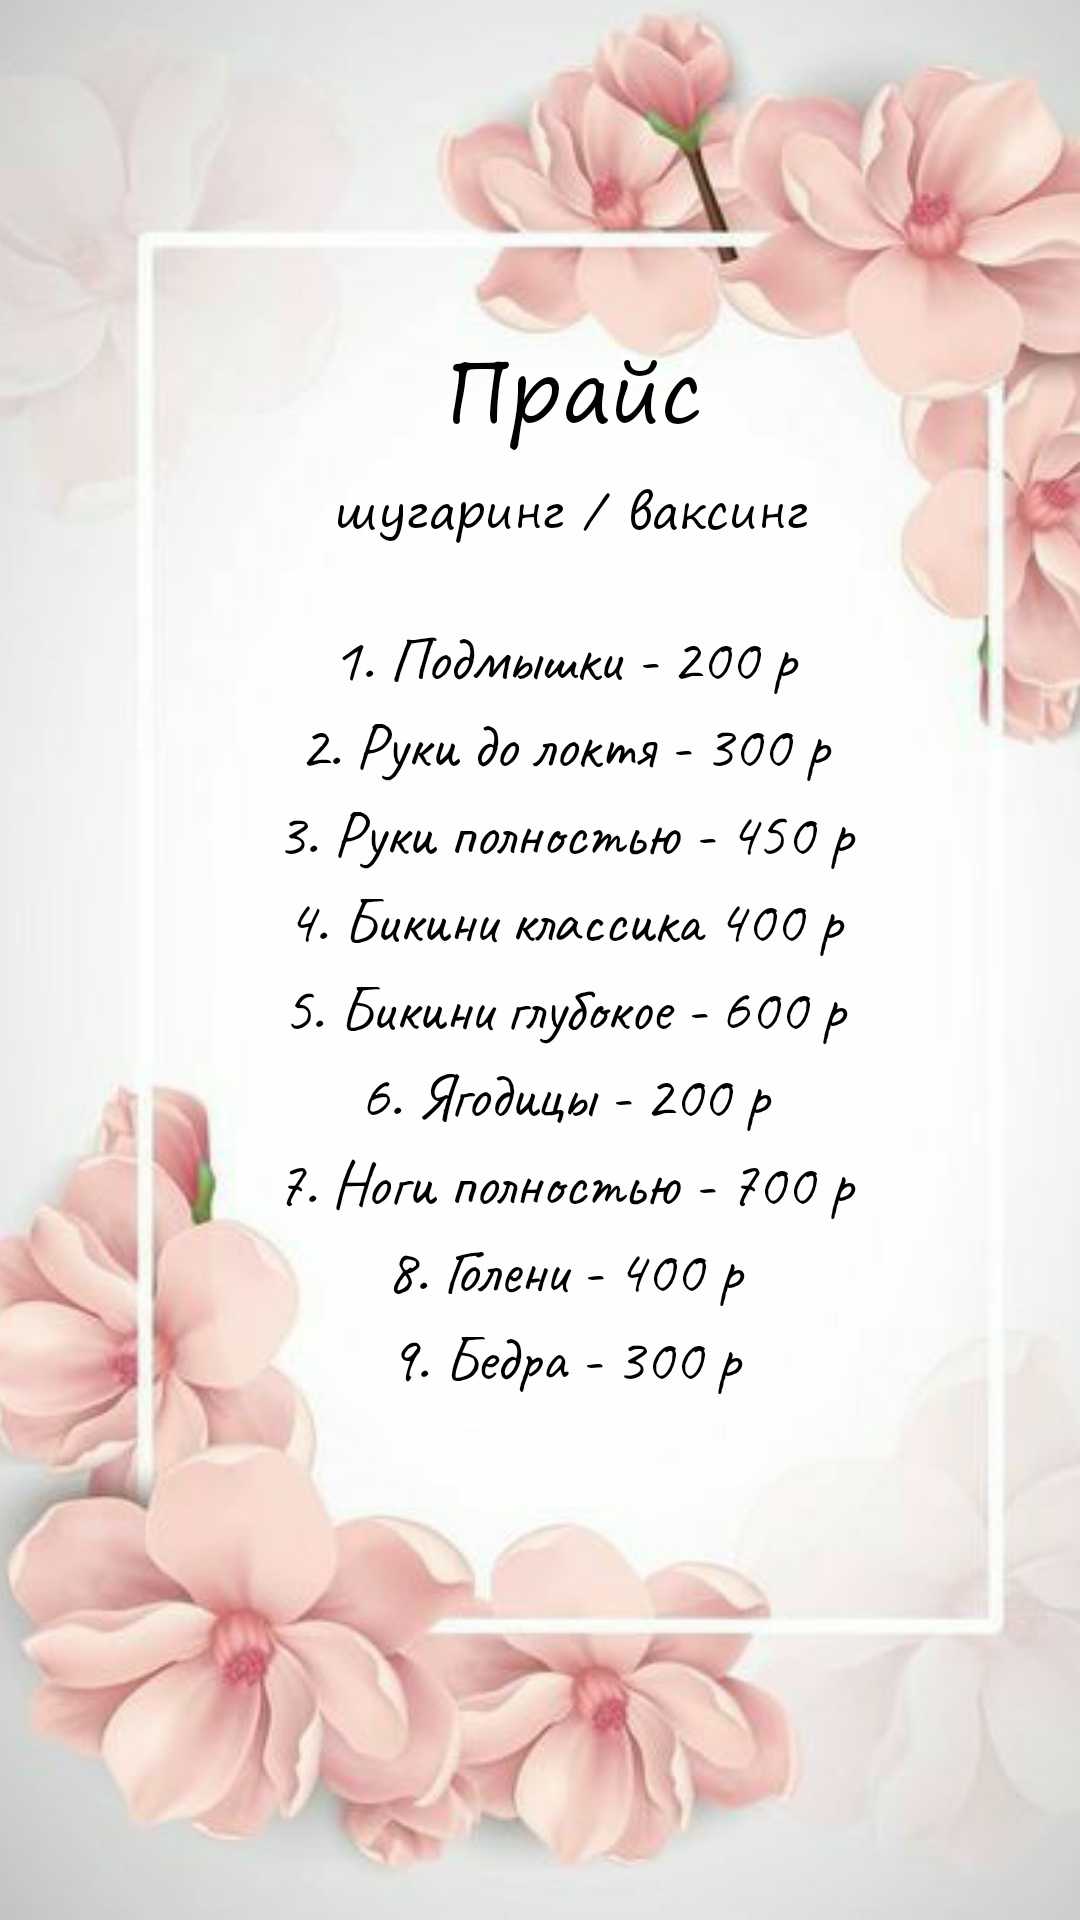 Депиляции в Самаре от 200 рублей. Записаться на депиляцию